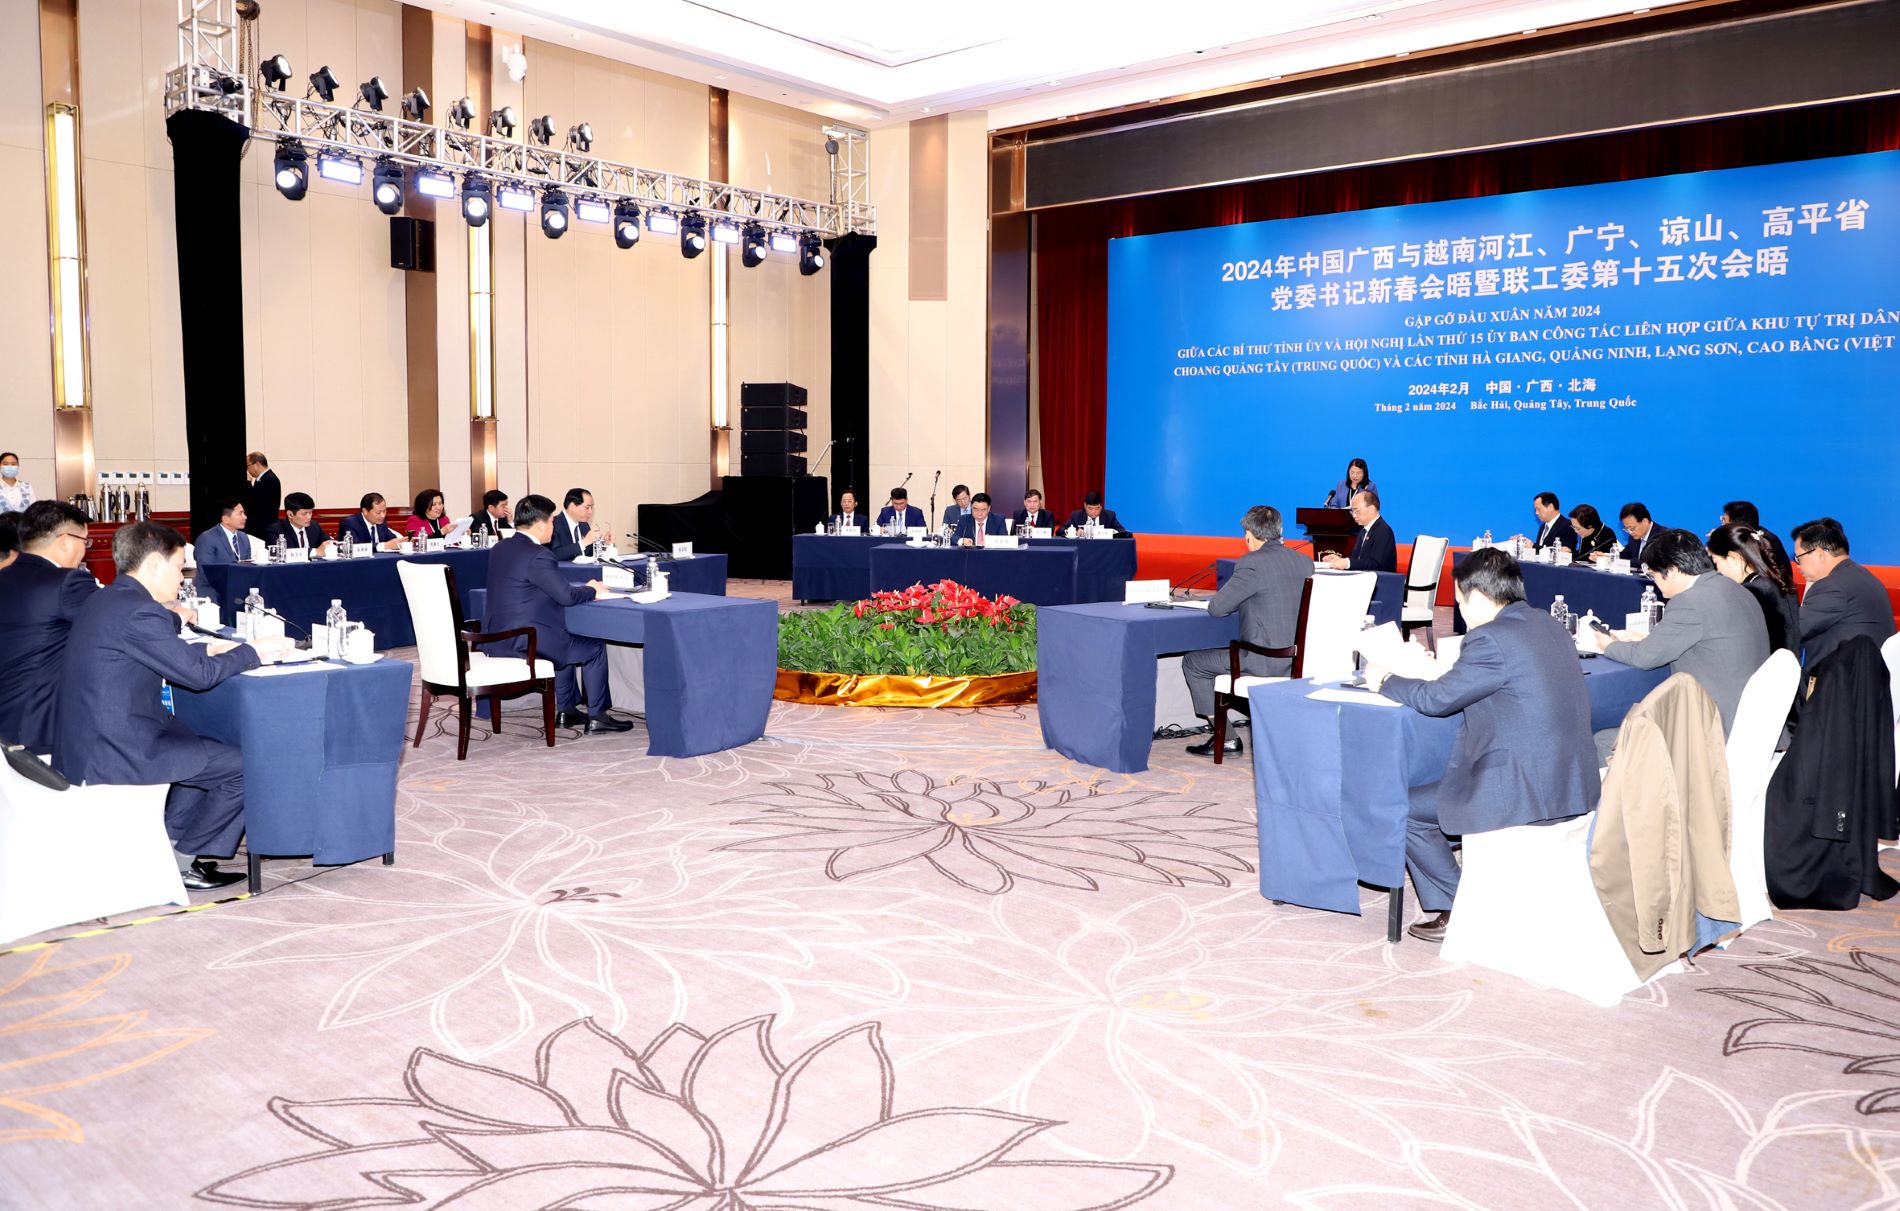 Ủy ban Công tác liên hợp các tỉnh Hà Giang, Cao Bằng, Lạng Sơn, Quảng Ninh và Khu tự trị dân tộc Choang Quảng Tây thảo luận tại hội nghị.